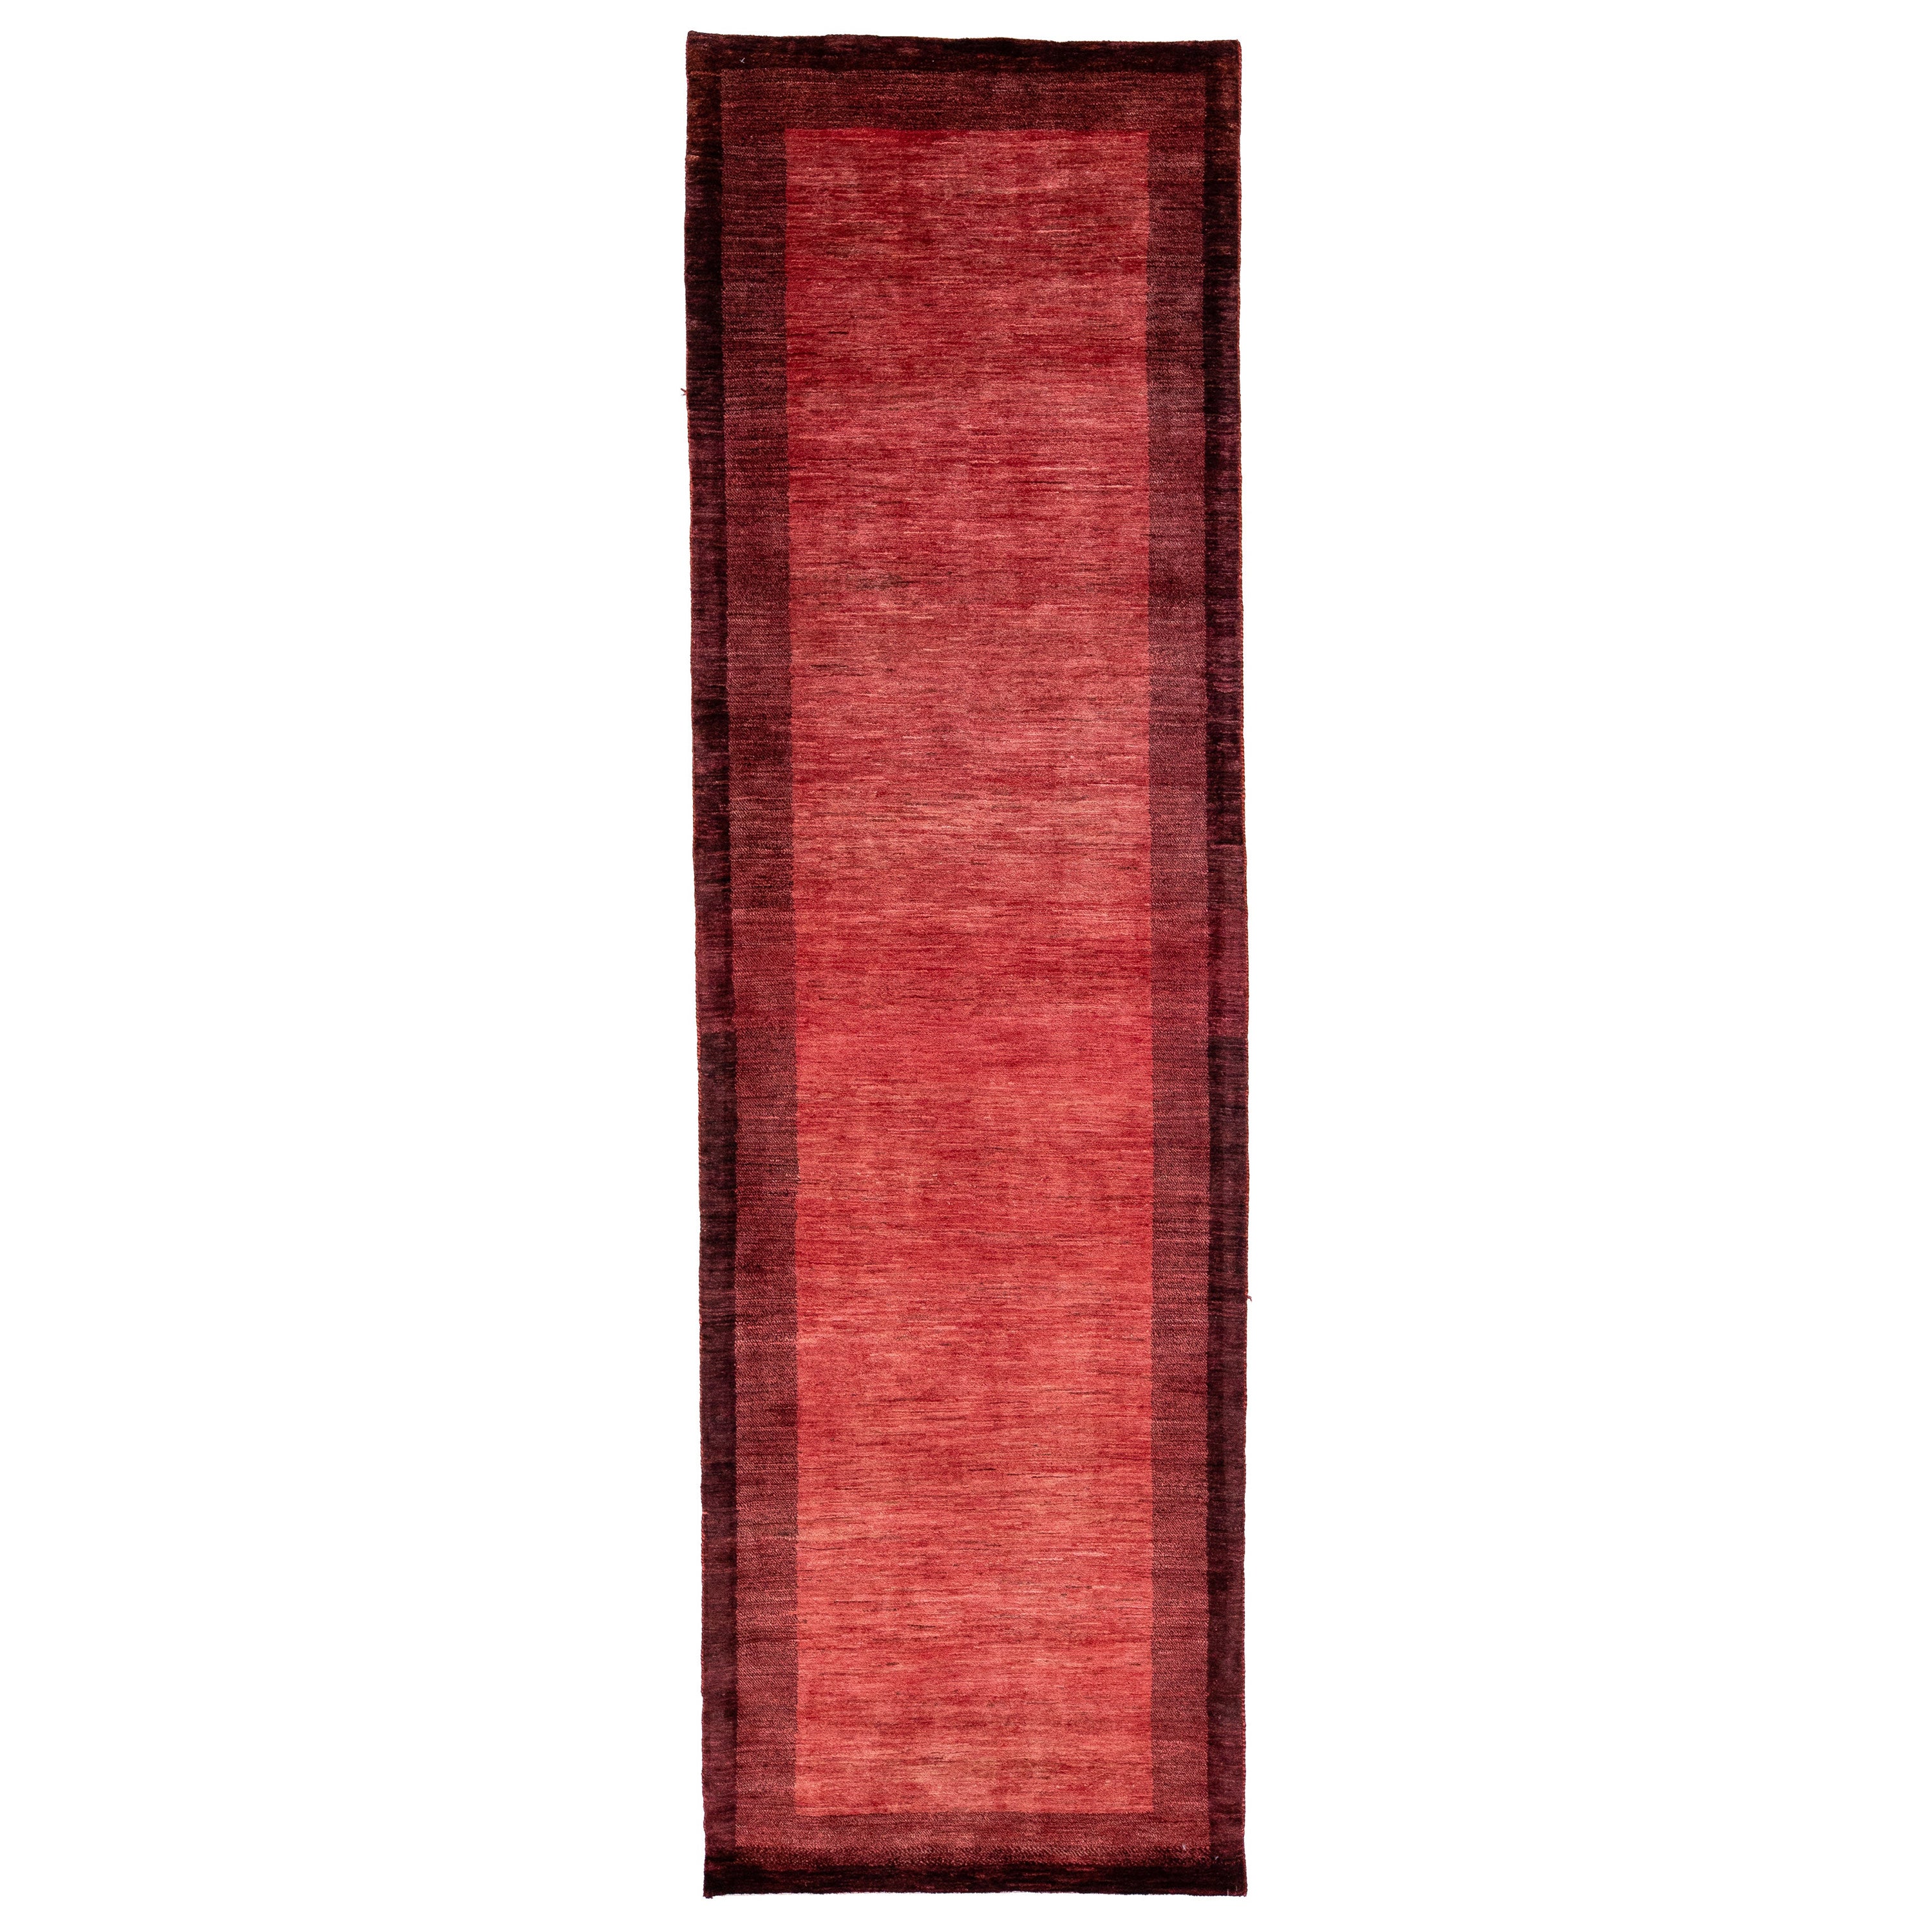 Tapis de couloir persan moderne Gabbeh en laine rouge fait à la main